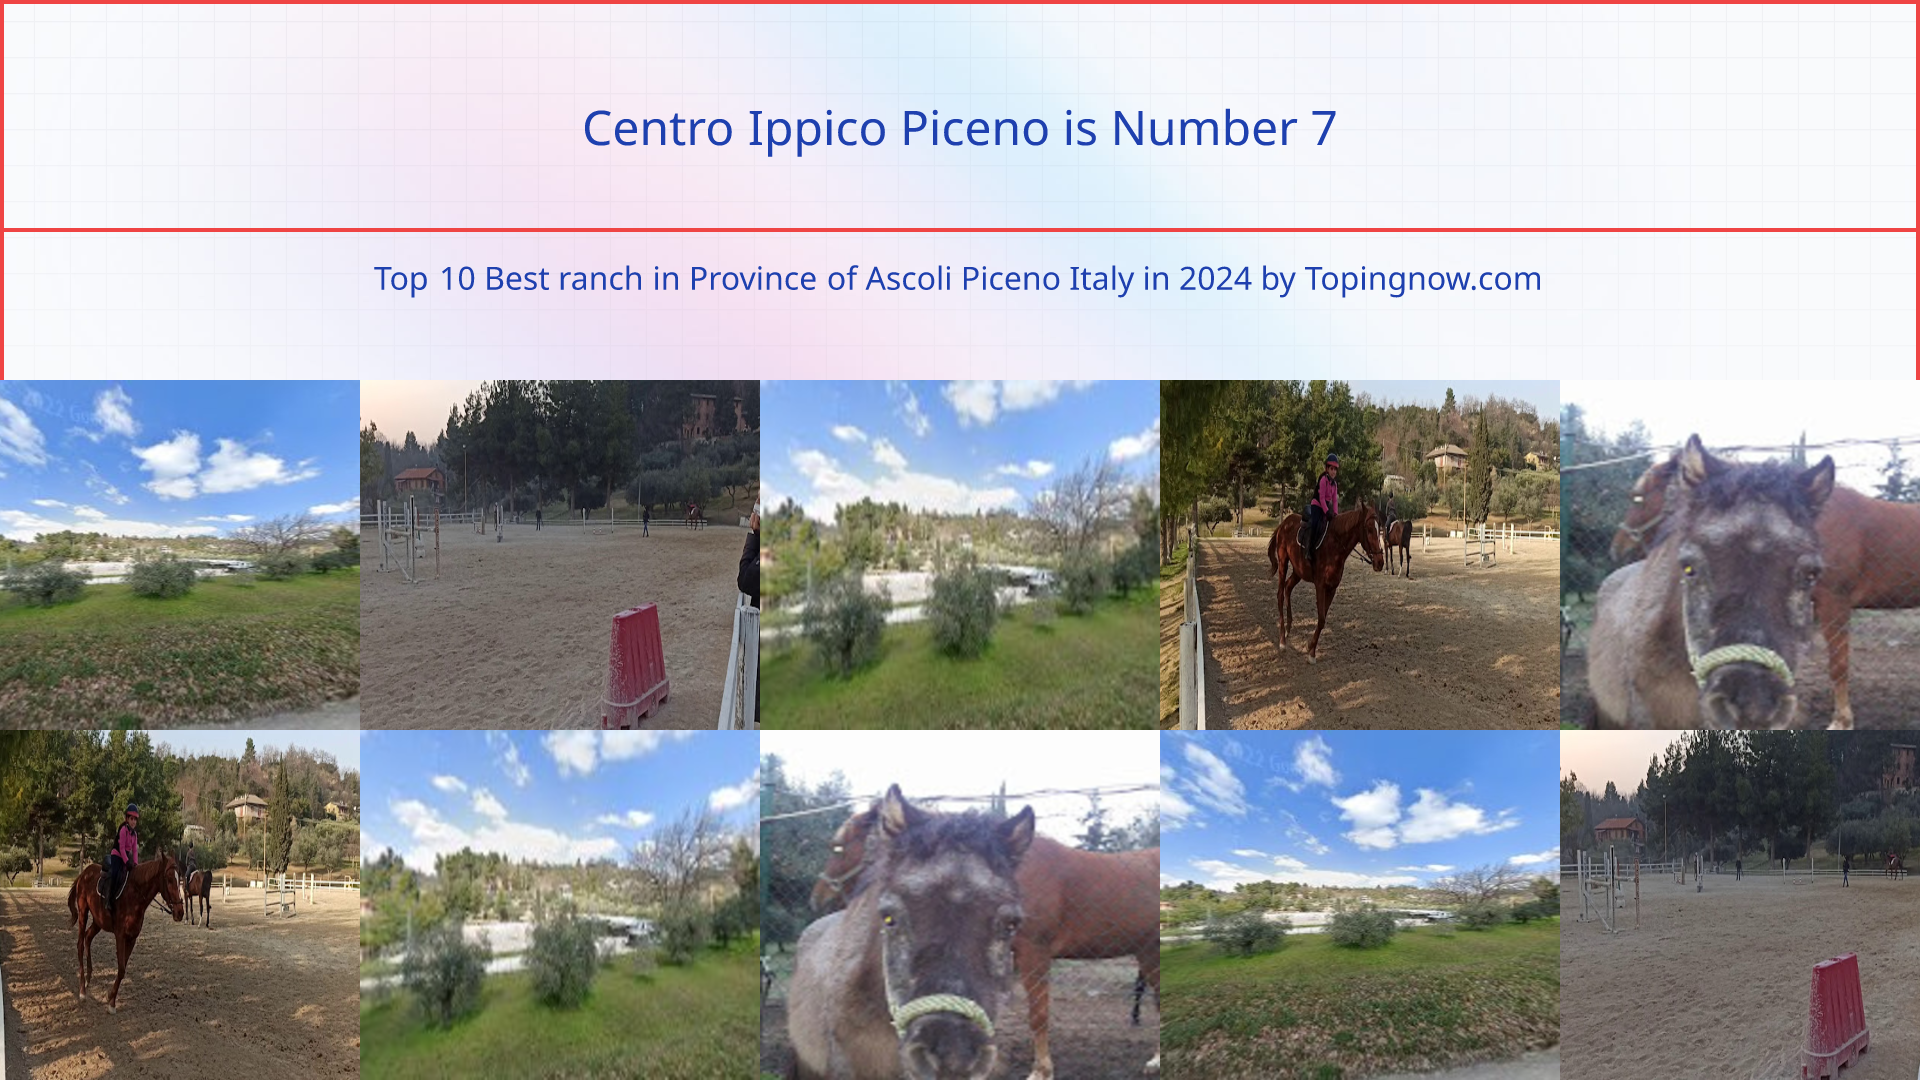 Centro Ippico Piceno: Top 10 Best ranch in Province of Ascoli Piceno Italy in 2024